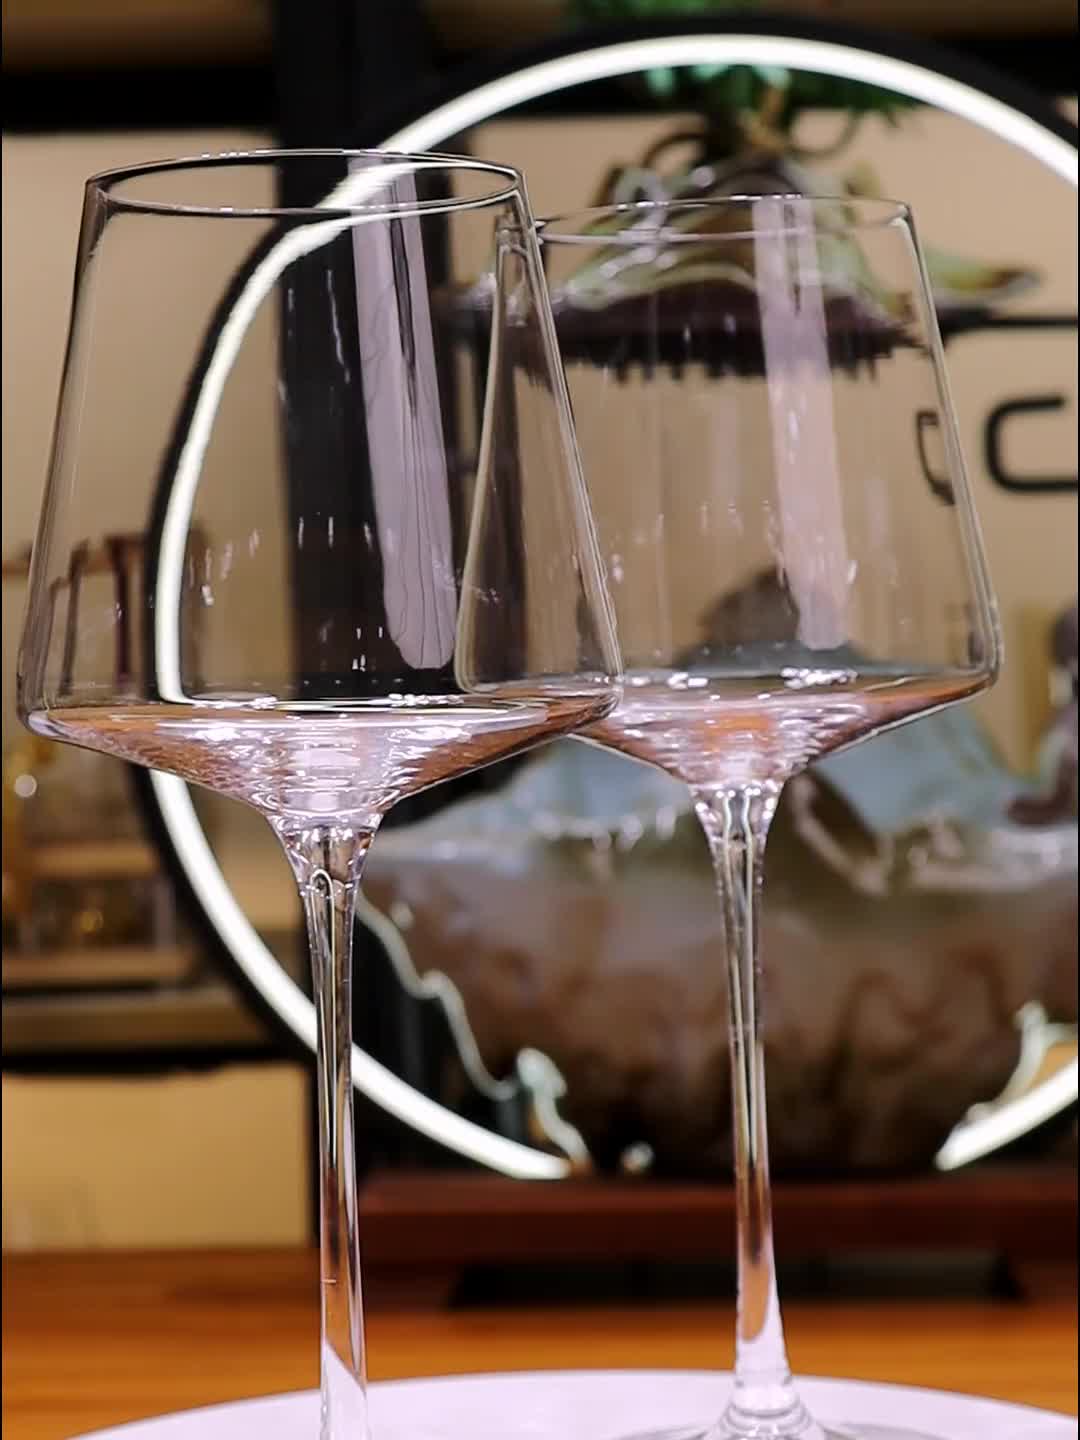 Copas de vino blanco y tinto – Juego de copas de vino clásicas prémium de  14 onzas para organizar va…Ver más Copas de vino blanco y tinto – Juego de